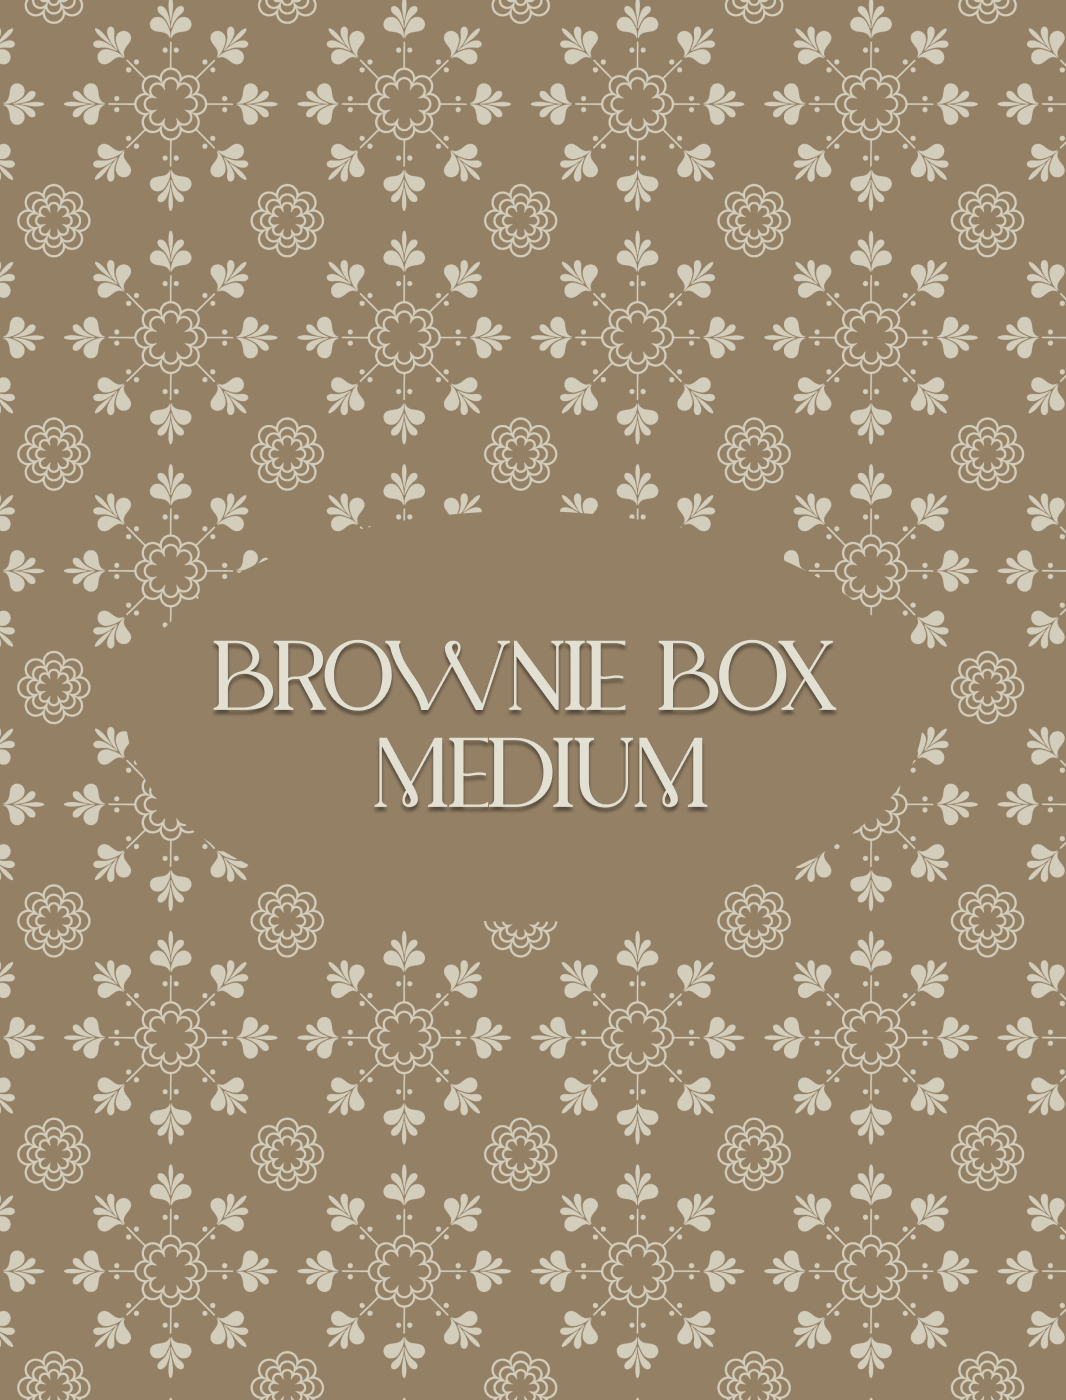 Brownies box medium